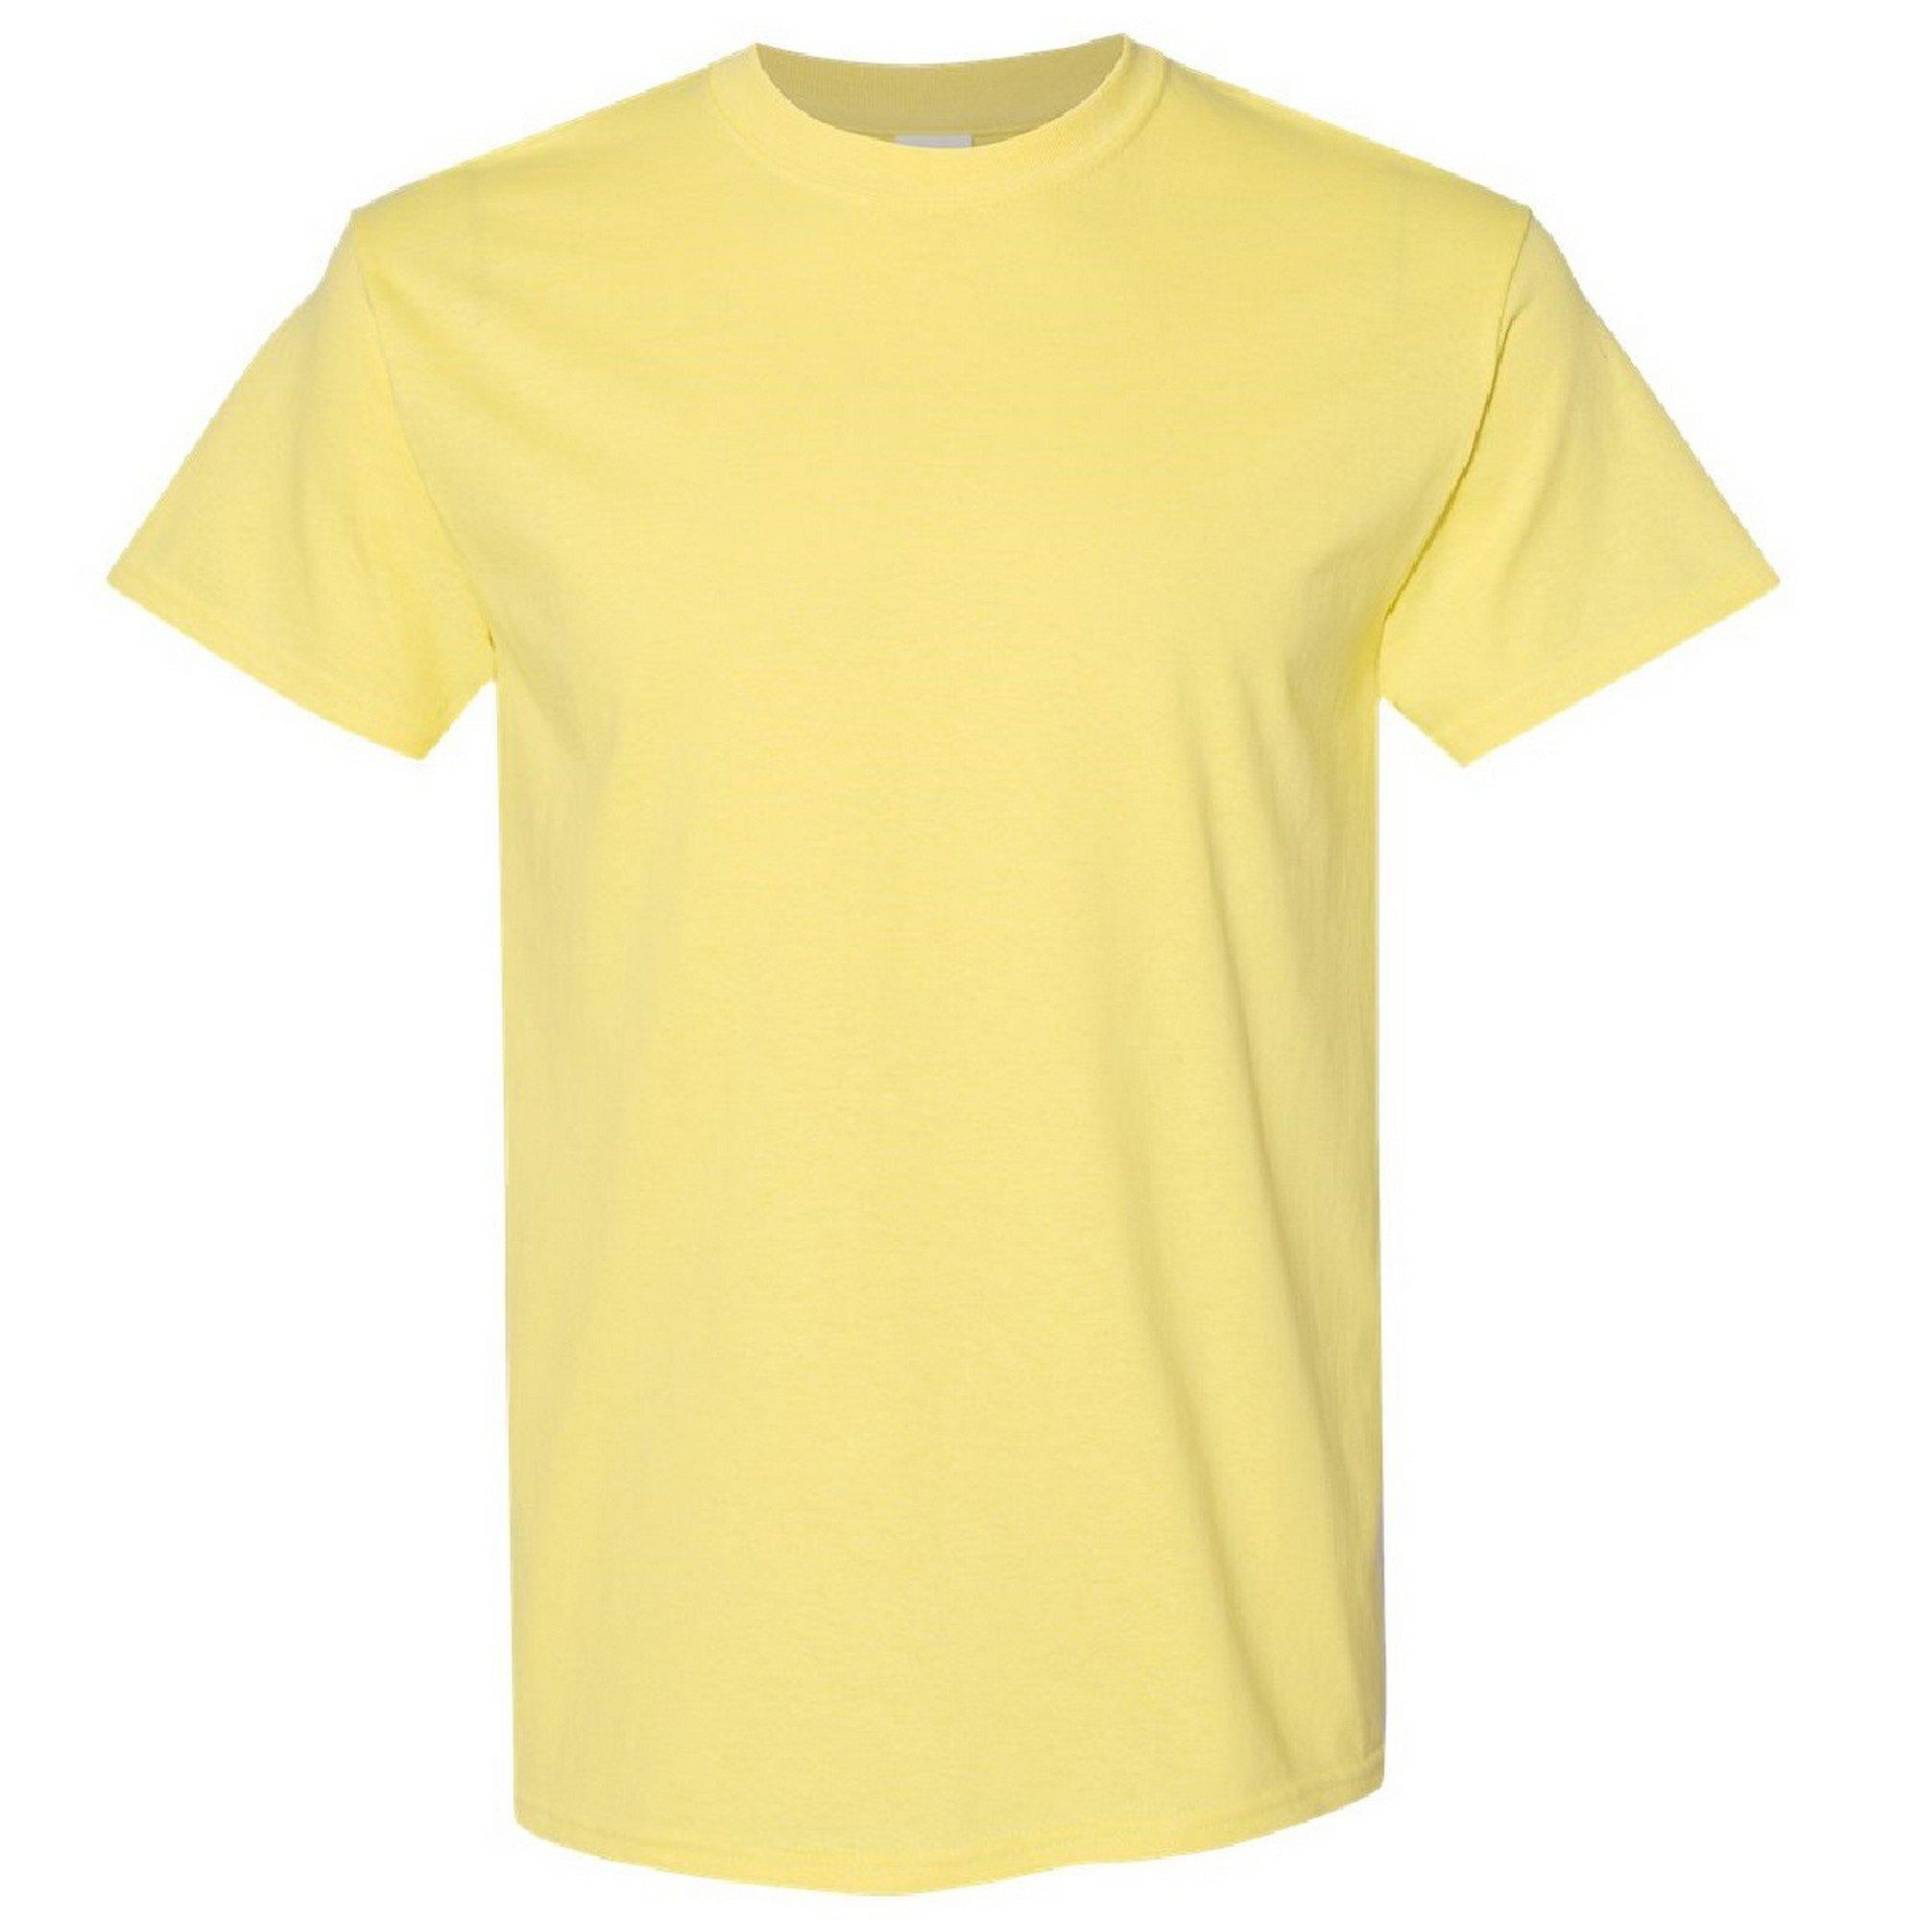 Tshirt (5 Stückpackung) Herren Gelb Bunt XL von Gildan